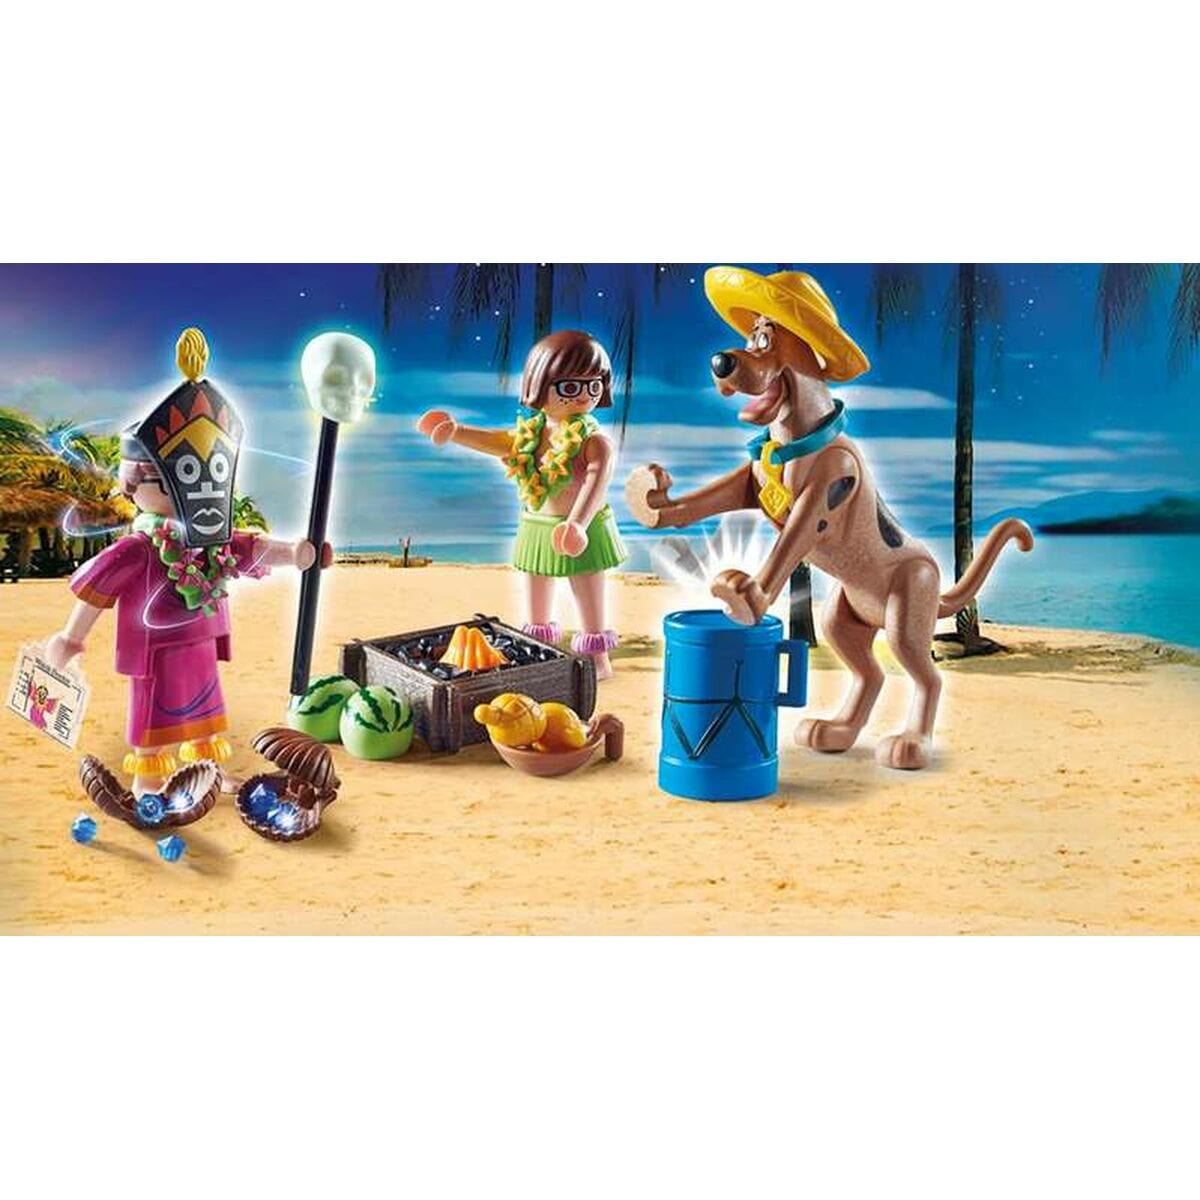 Playmobil Spielzeug | Kostüme > Spielzeug und Spiele > Weiteres spielzeug Playset Scooby Doo Aventure with Witch Doctor Playmobil 70707 (46 pcs)